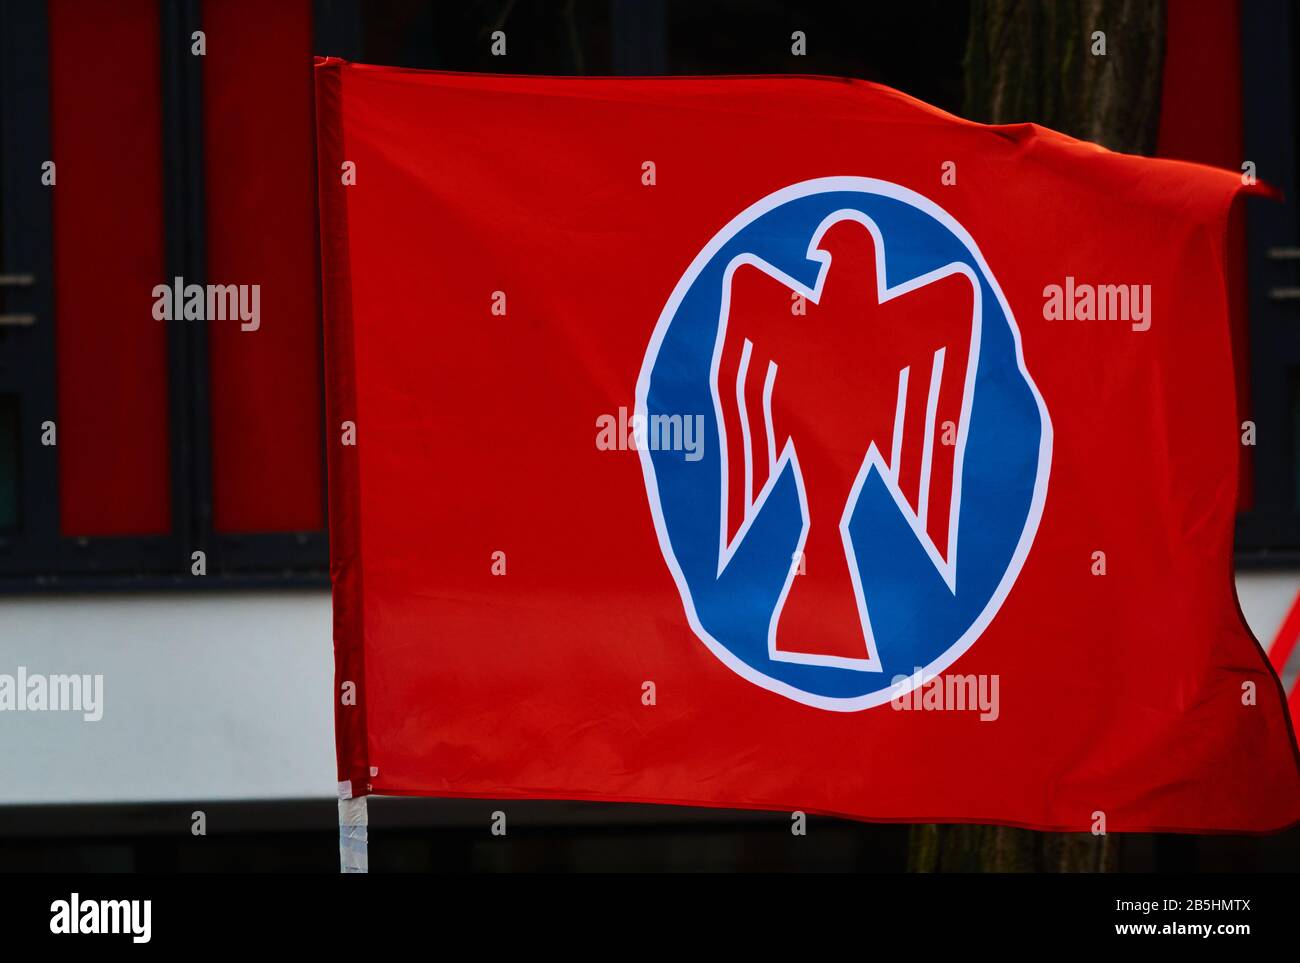 Braunschweig, Allemagne, 8 mars 2020: Journée des femmes 2020, drapeau rouge des Falcons, une organisation socialiste de jeunes à l'occasion de la Journée internationale de la femme Banque D'Images